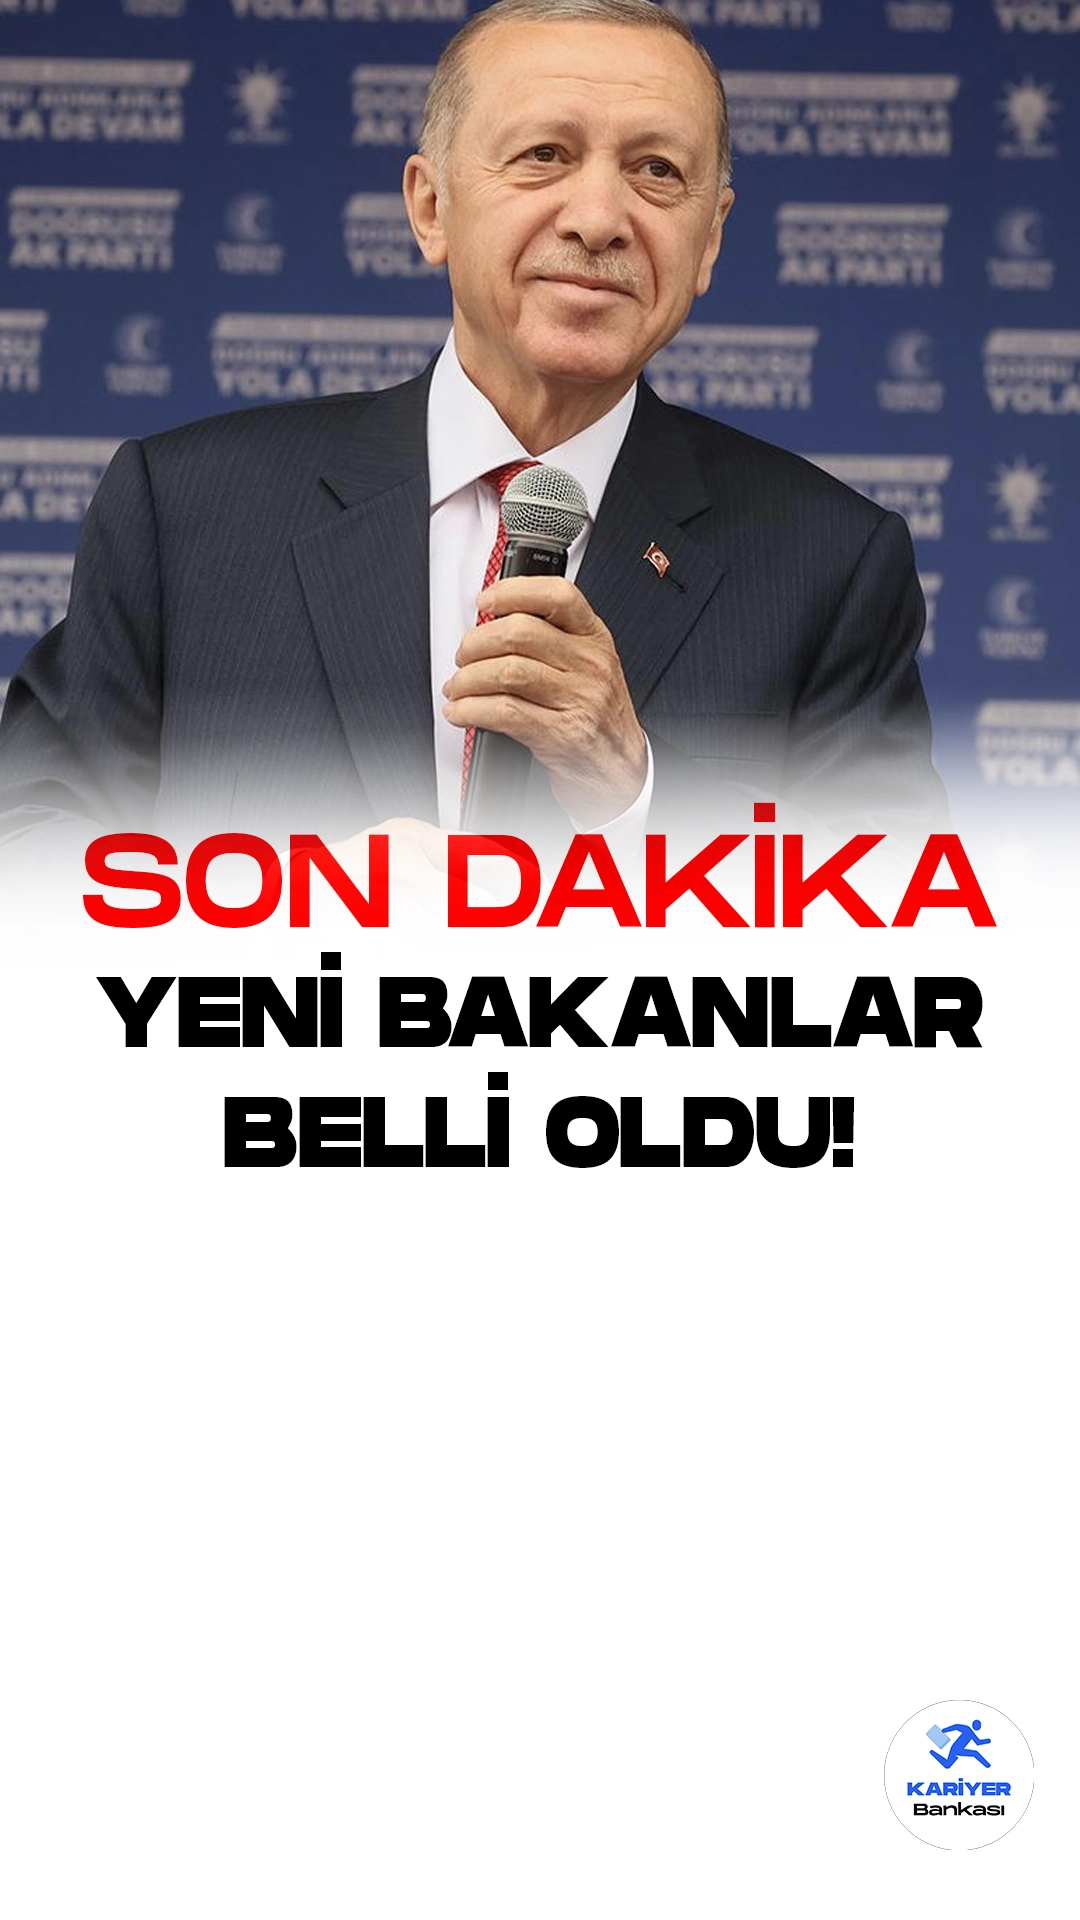 Son dakika...Cumhurbaşkanı Recep Tayyip Erdoğan yeni kabineyi açıkladı.